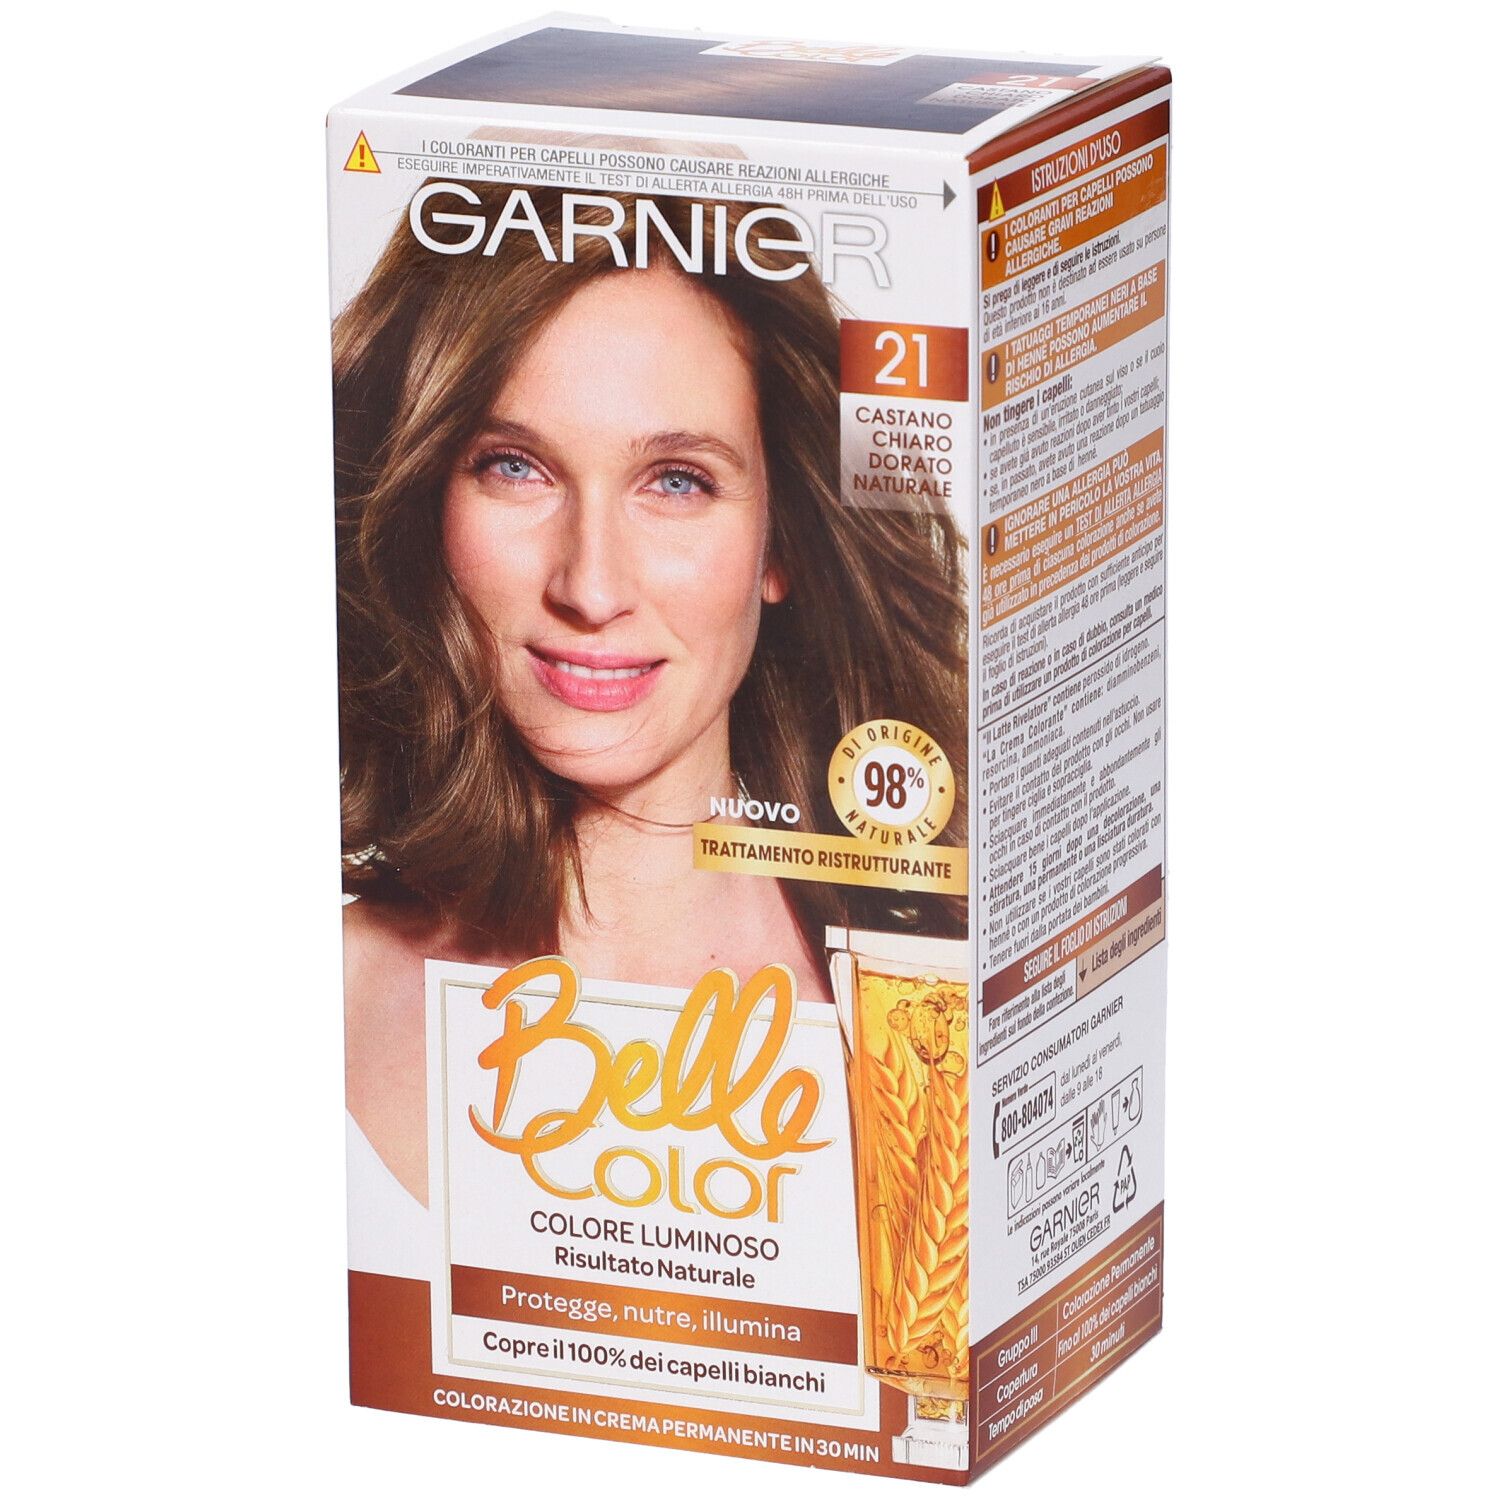 Image of Garnier Tinta Capelli Belle Color, Colore Luminoso e Riflessi Naturali, Copre il 100% dei capelli bianchi, Castano Chiaro Dorato Naturale